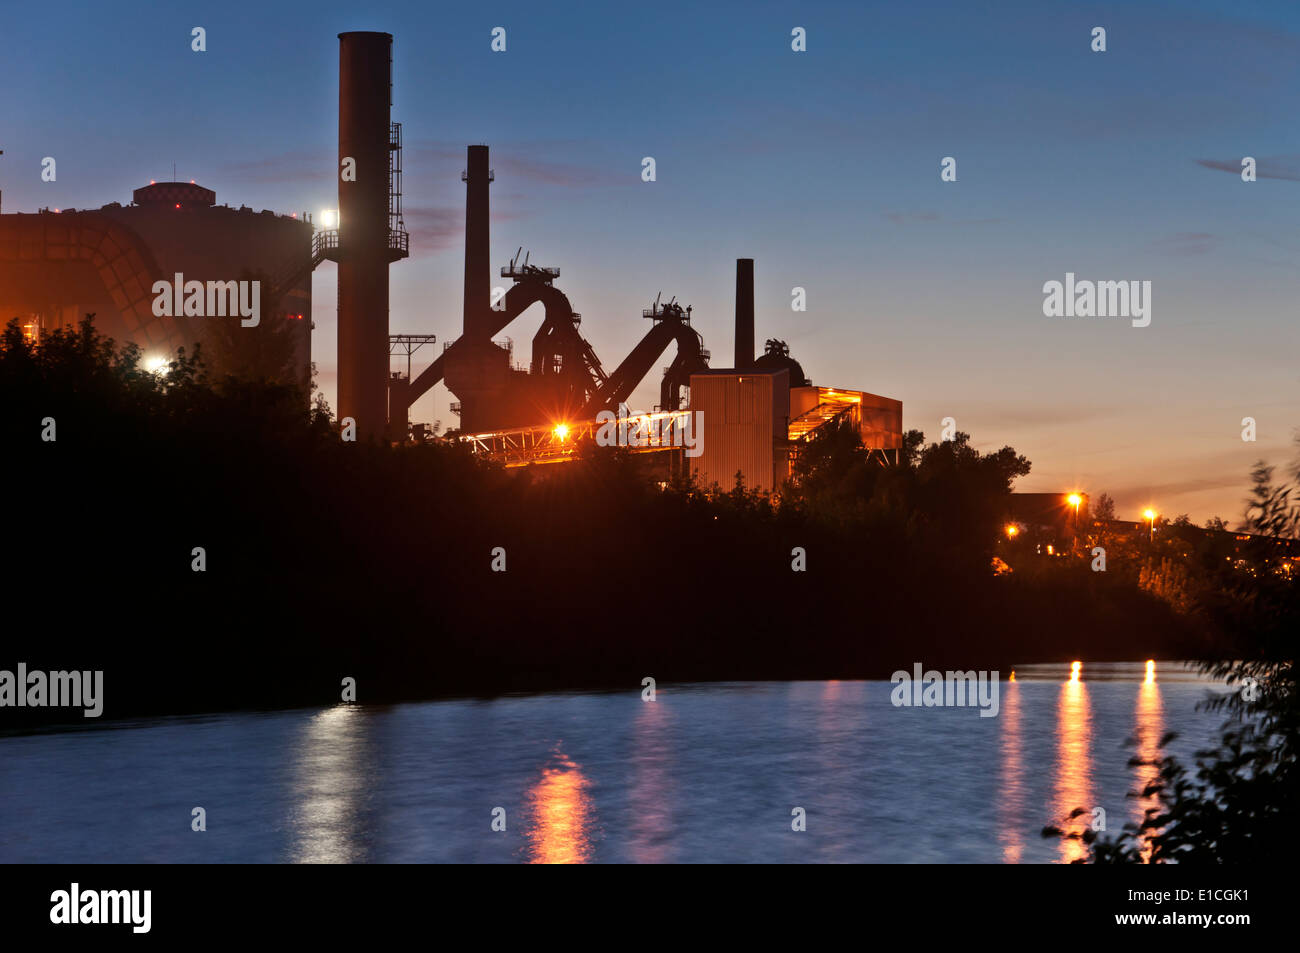 Der Stahlindustrie Wasserreflexion nachts beleuchteten Industrieanlage Stockfoto